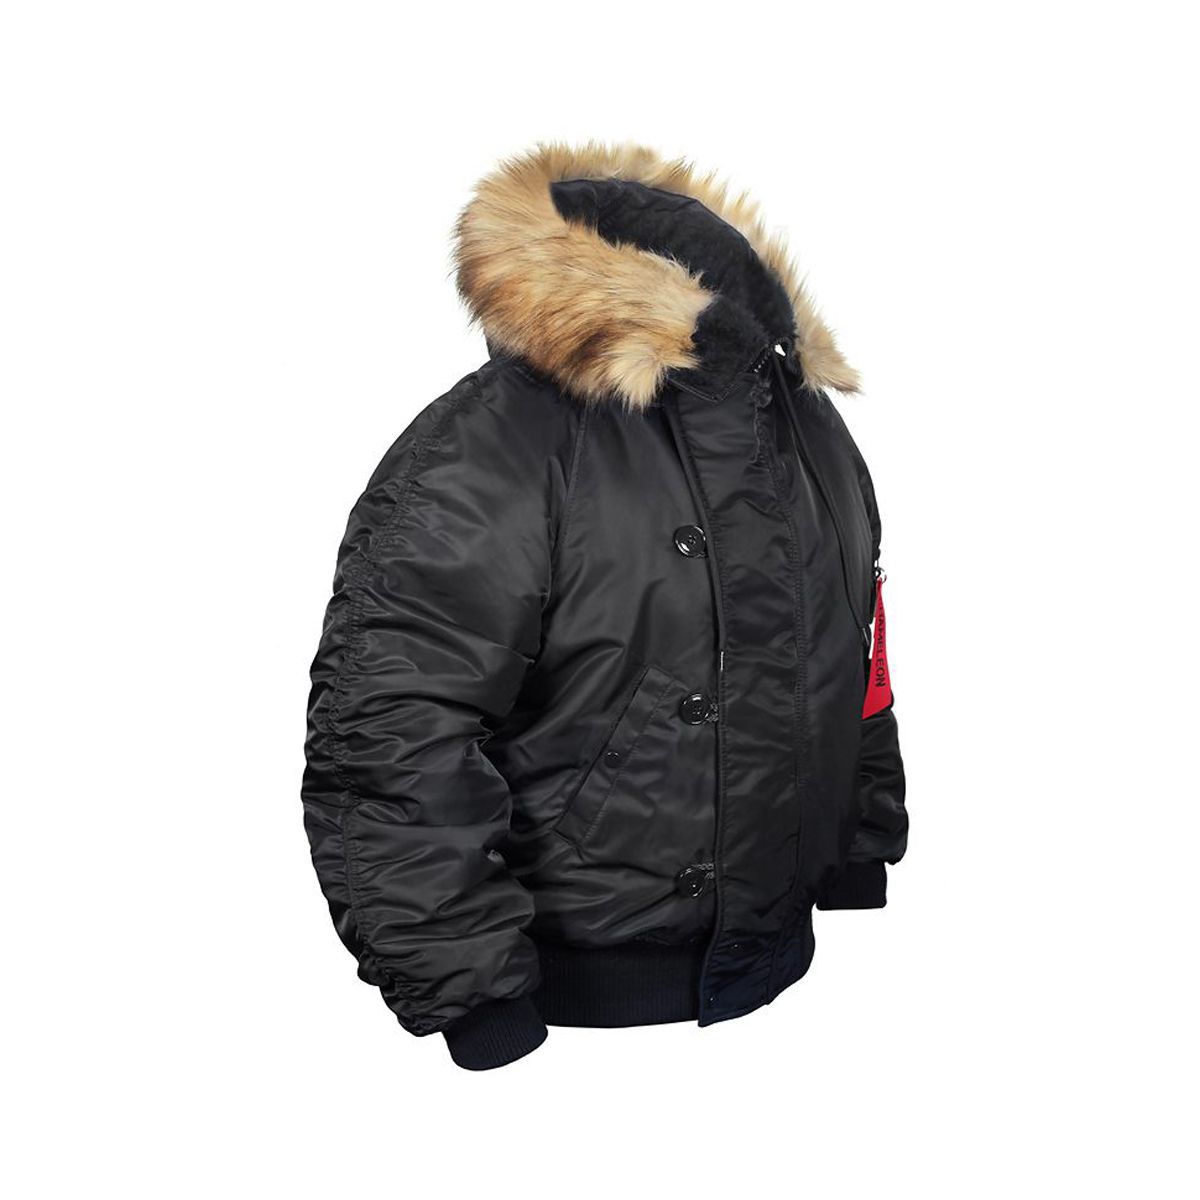 Купить аляску в спб. Куртка Аляска 2. Куртка Аляска укороченная n-2b. Куртка Аляска Nordland. Куртка Милтек Аляска мужская.